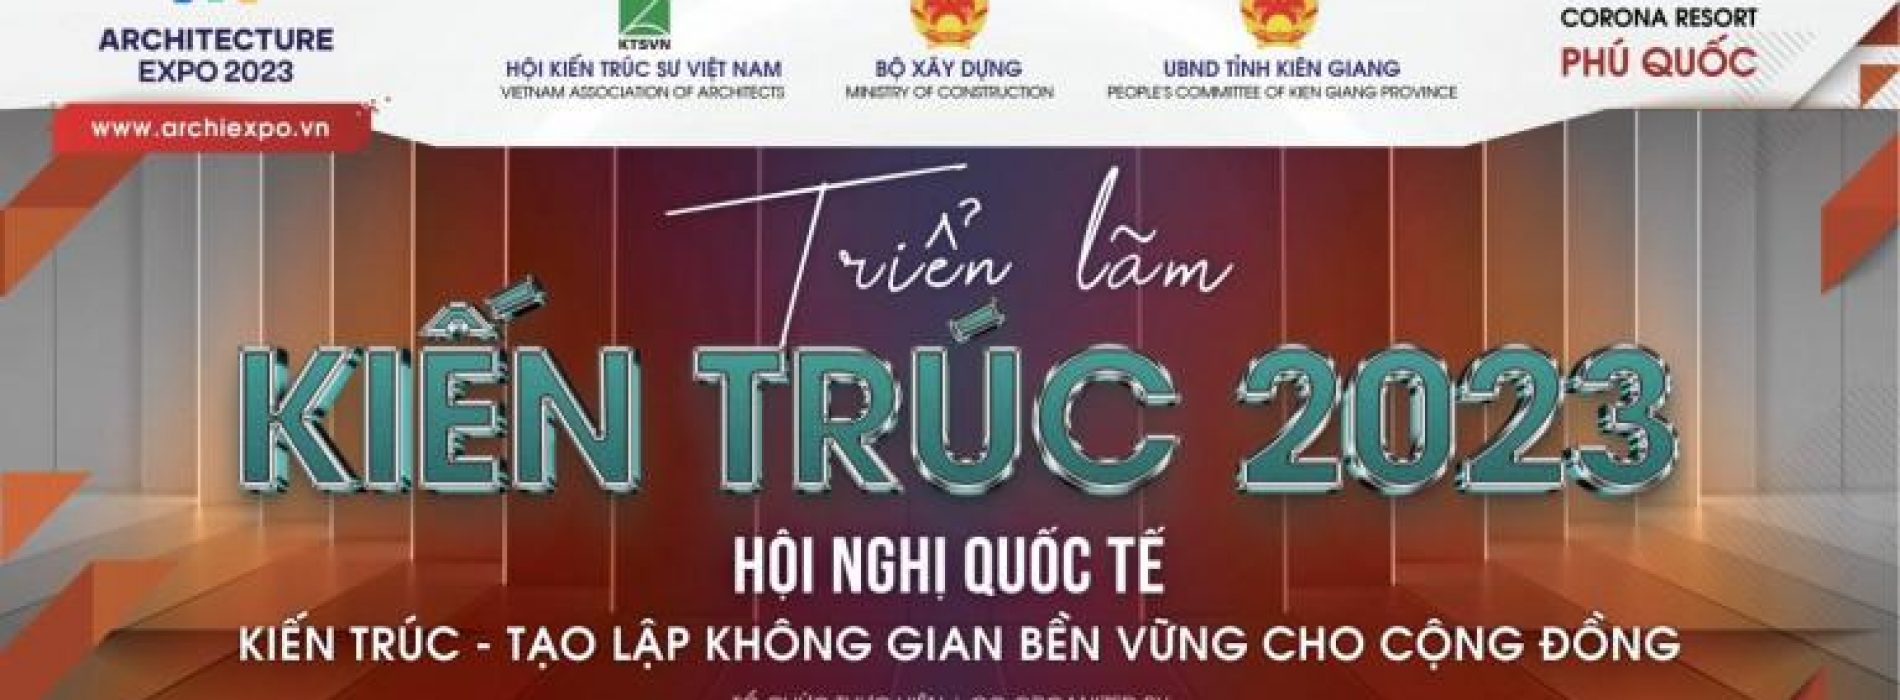 Việt Nam lần đầu tiên tổ chức Triển lãm EXPO Kiến trúc